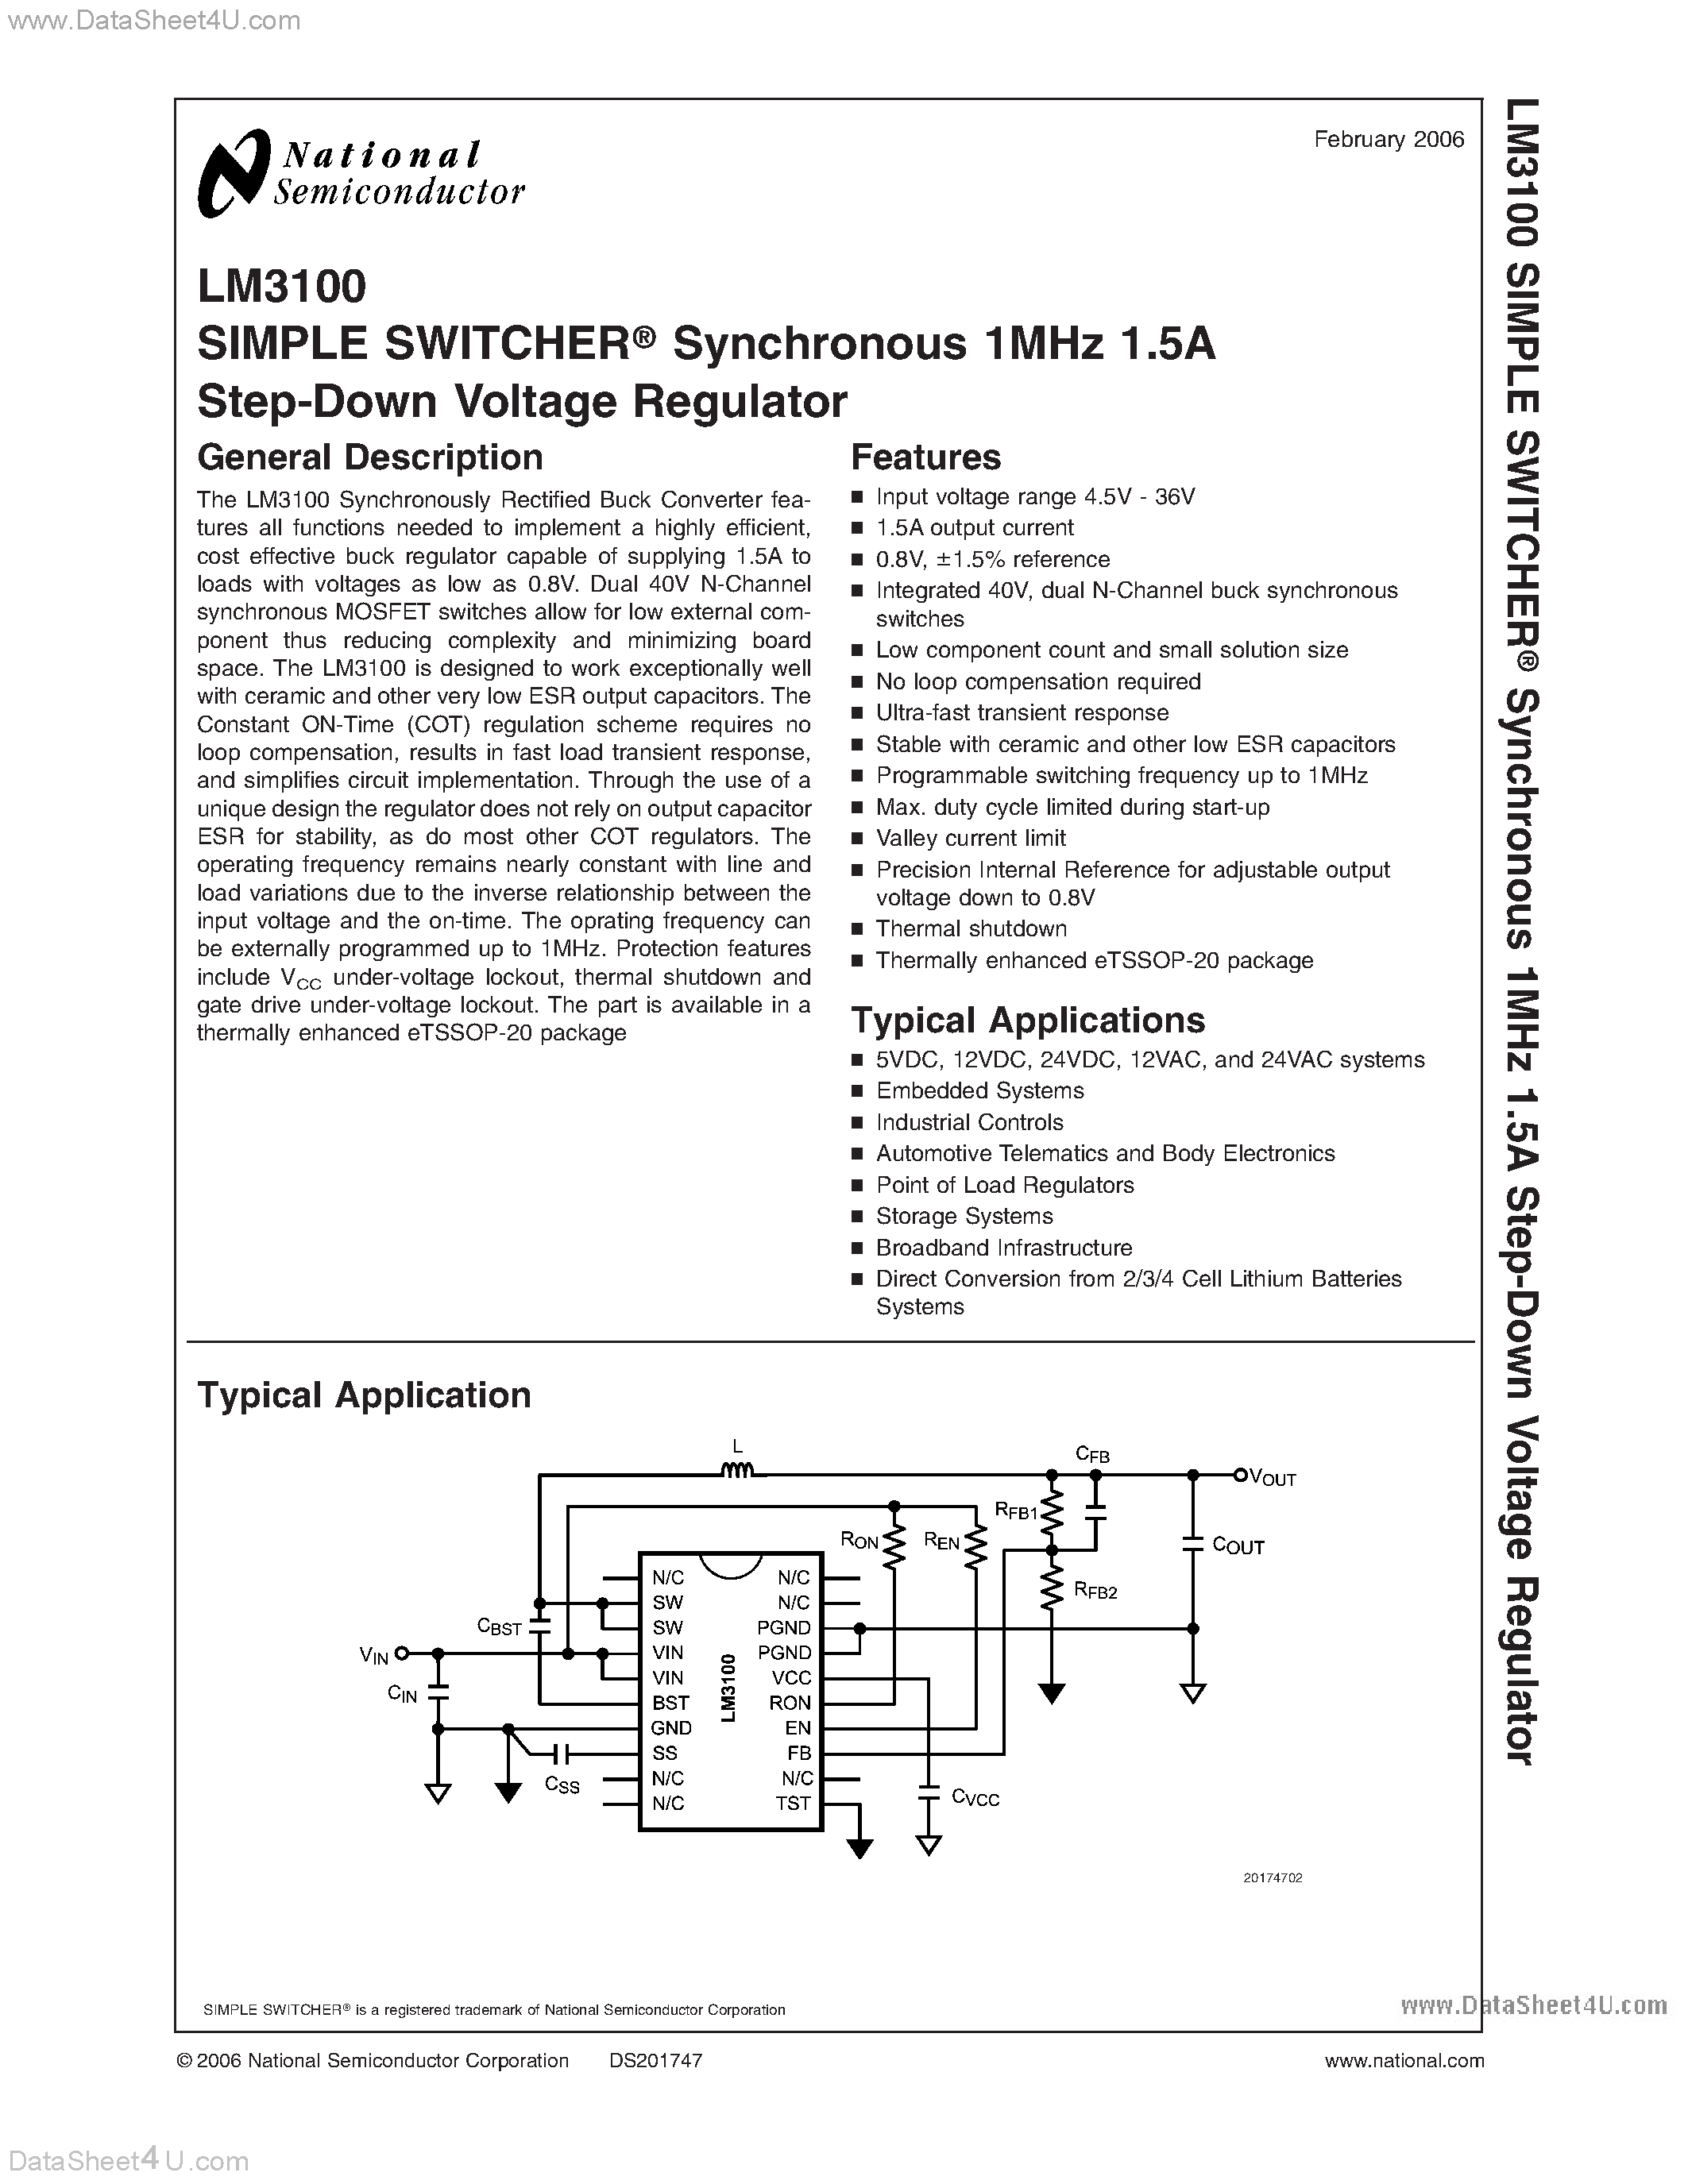 Даташит LM3100 - Voltage Regulator страница 1